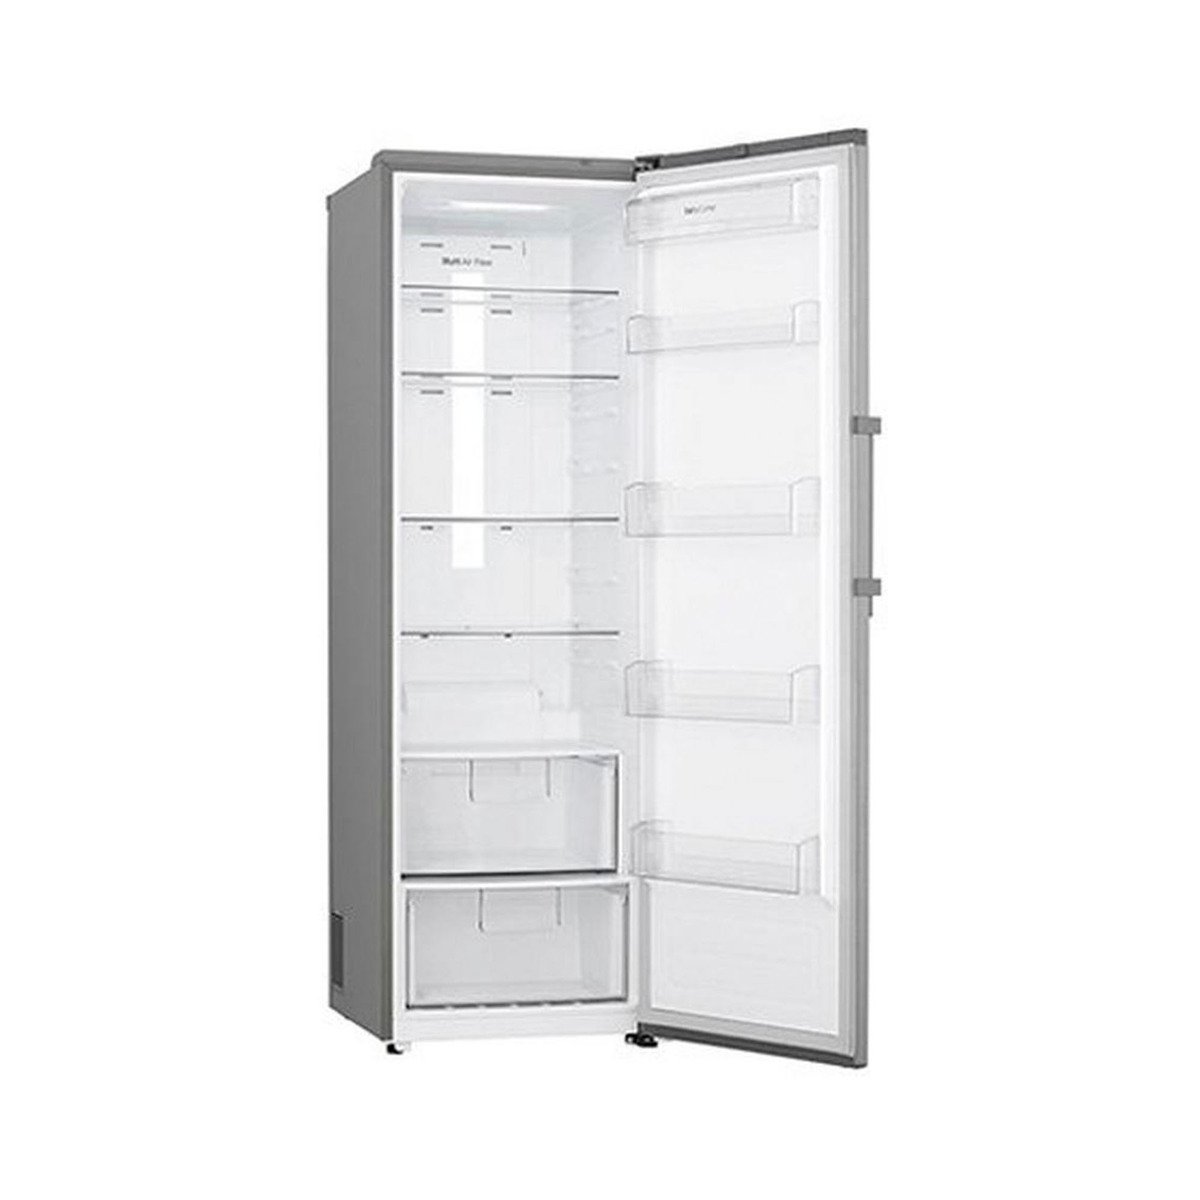 LG Refrigerator LD141BBSLN 382Ltr